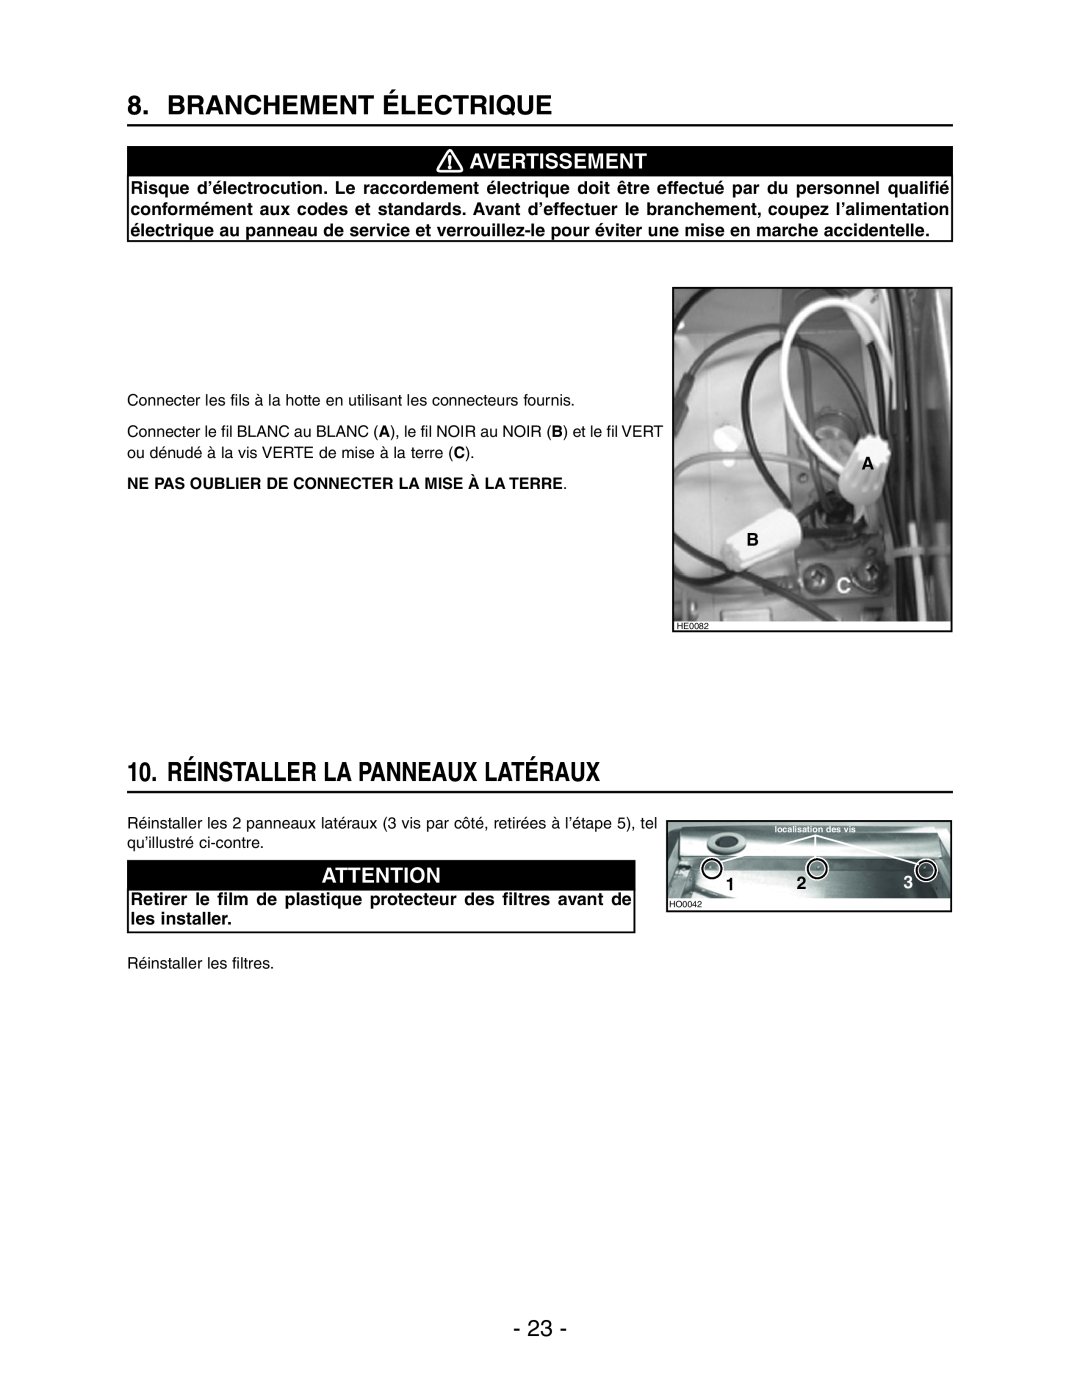 Broan Model E662 installation instructions Branchement Électrique, 10. RÉINSTALLER LA PANNEAUX LATÉRAUX, Avertissement 